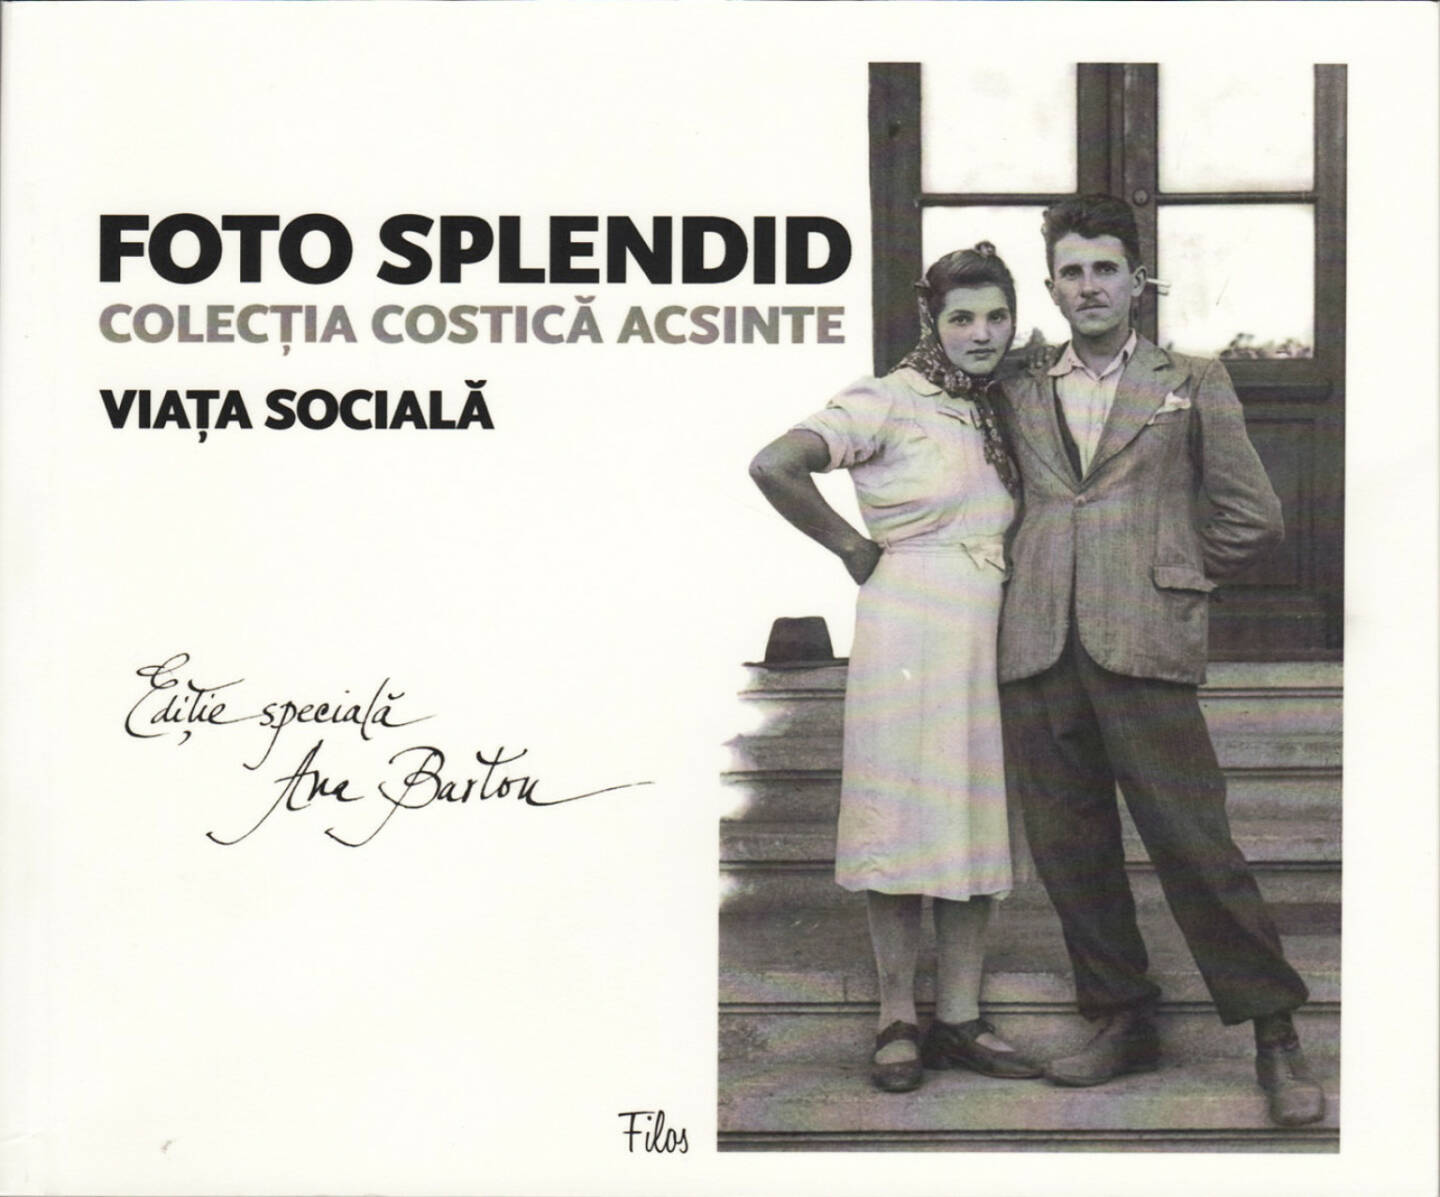 Costică Acsinte - Foto Splendid vol 1: Viața socială, Editura Filos & Cezar Popescu 2015, Cover - http://josefchladek.com/book/costică_acsinte_-_foto_splendid_vol_1_viața_socială